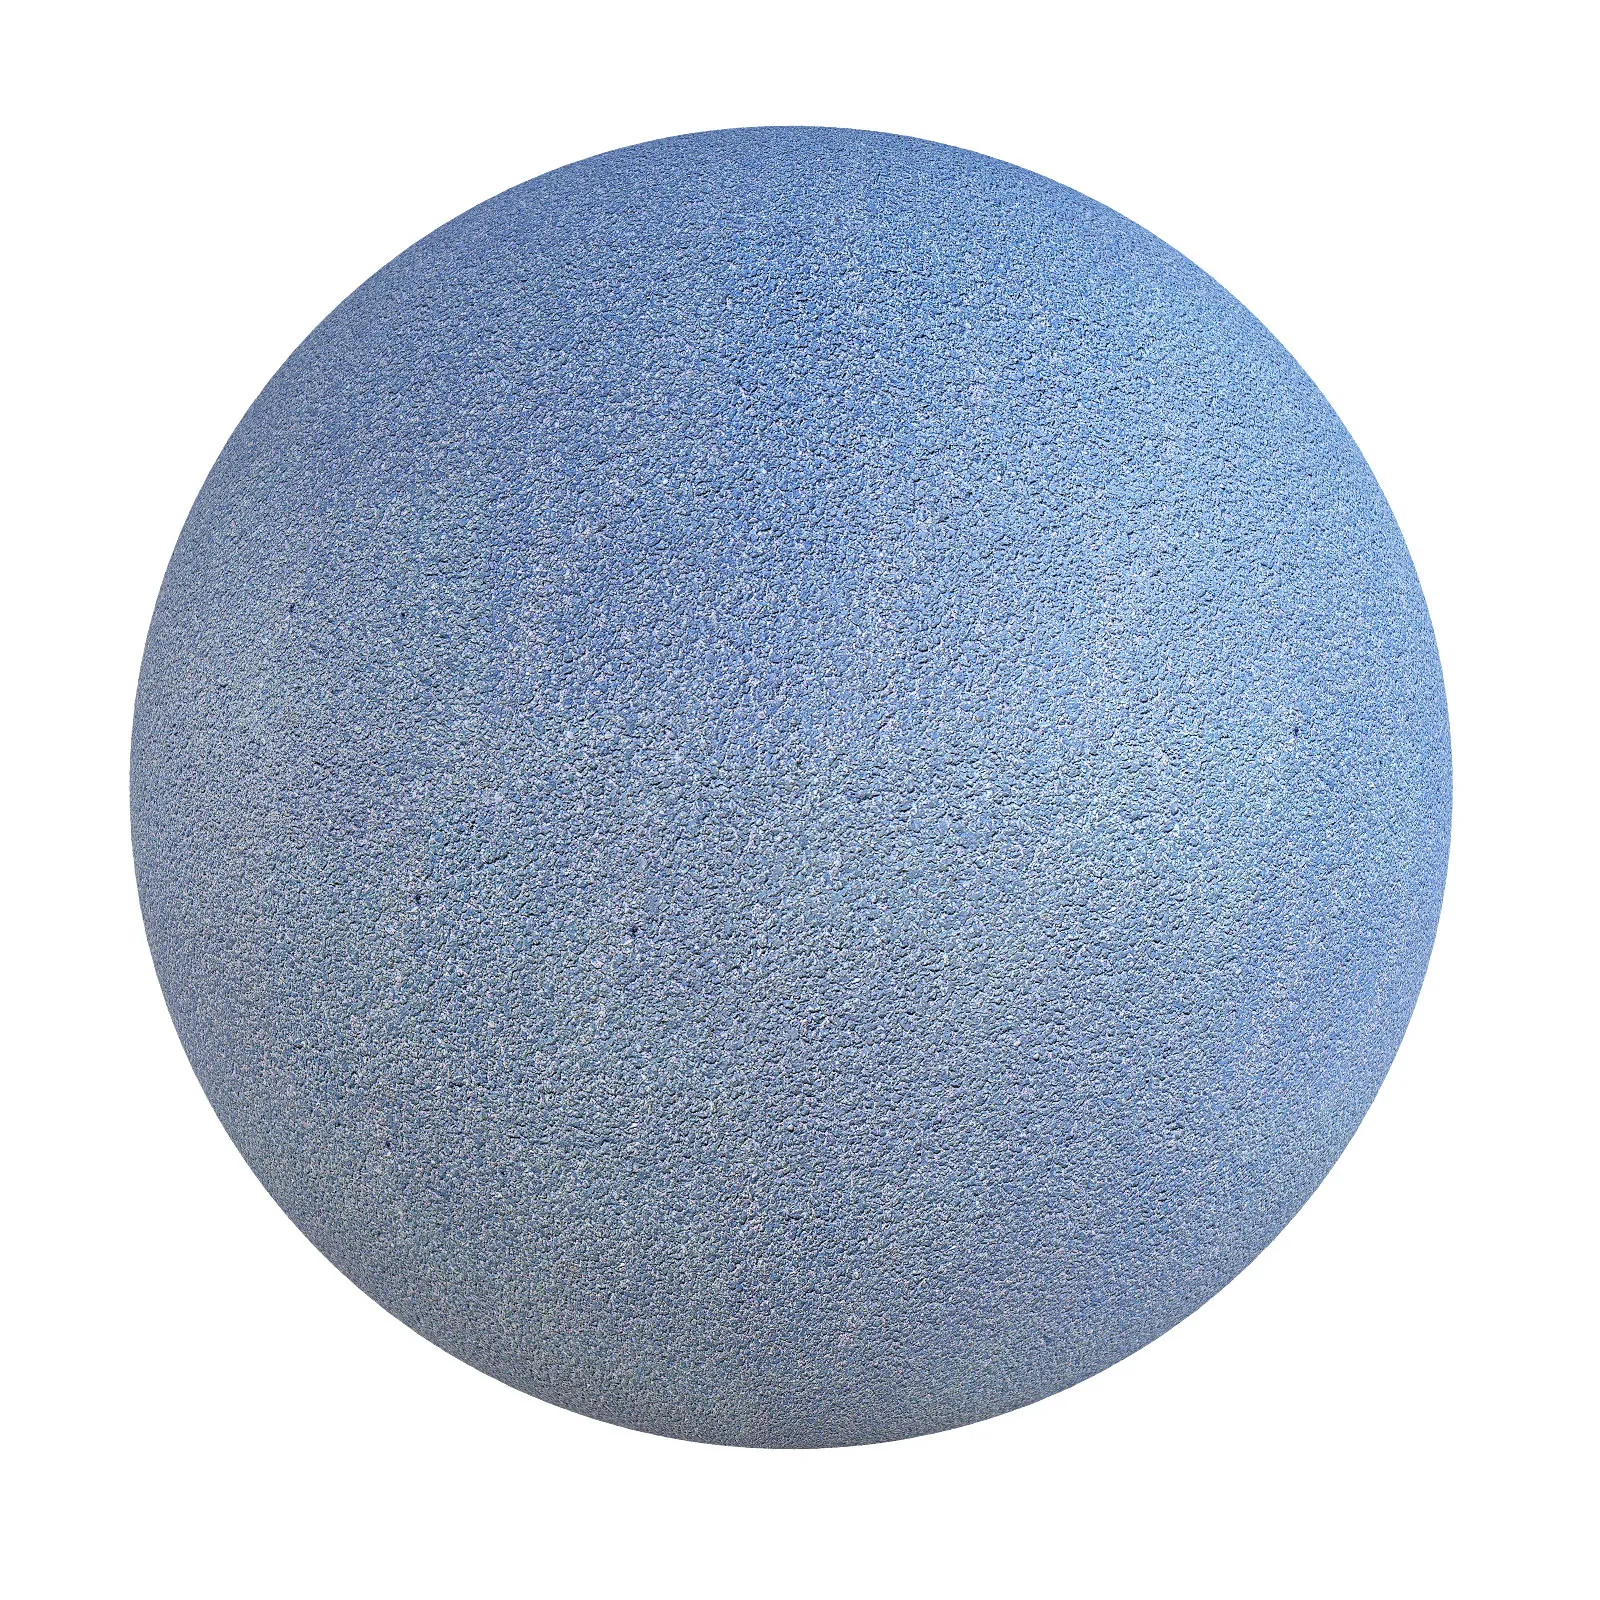 Cgaxis Pbr 15 Blue Painted Asphalt 3